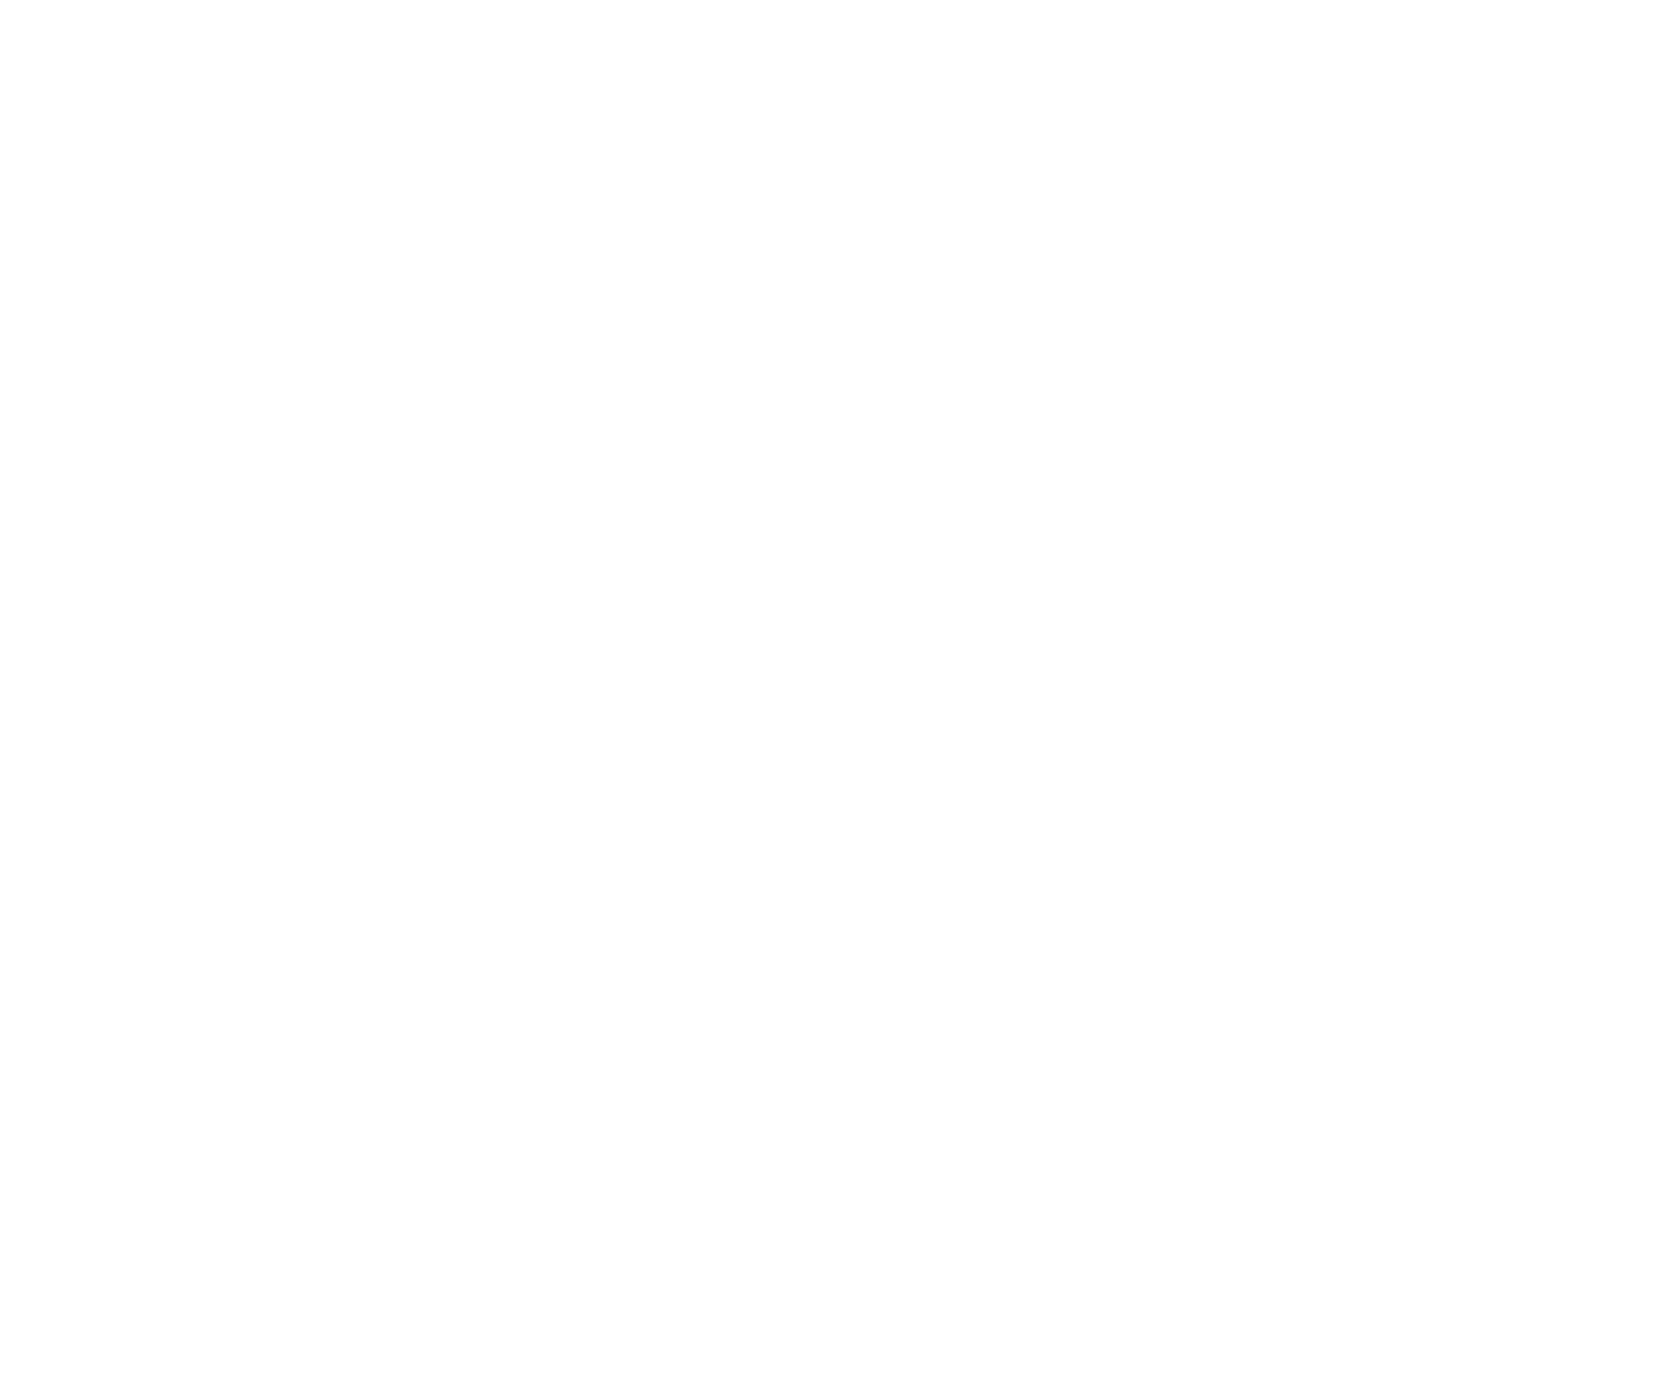 Globalia Yachting